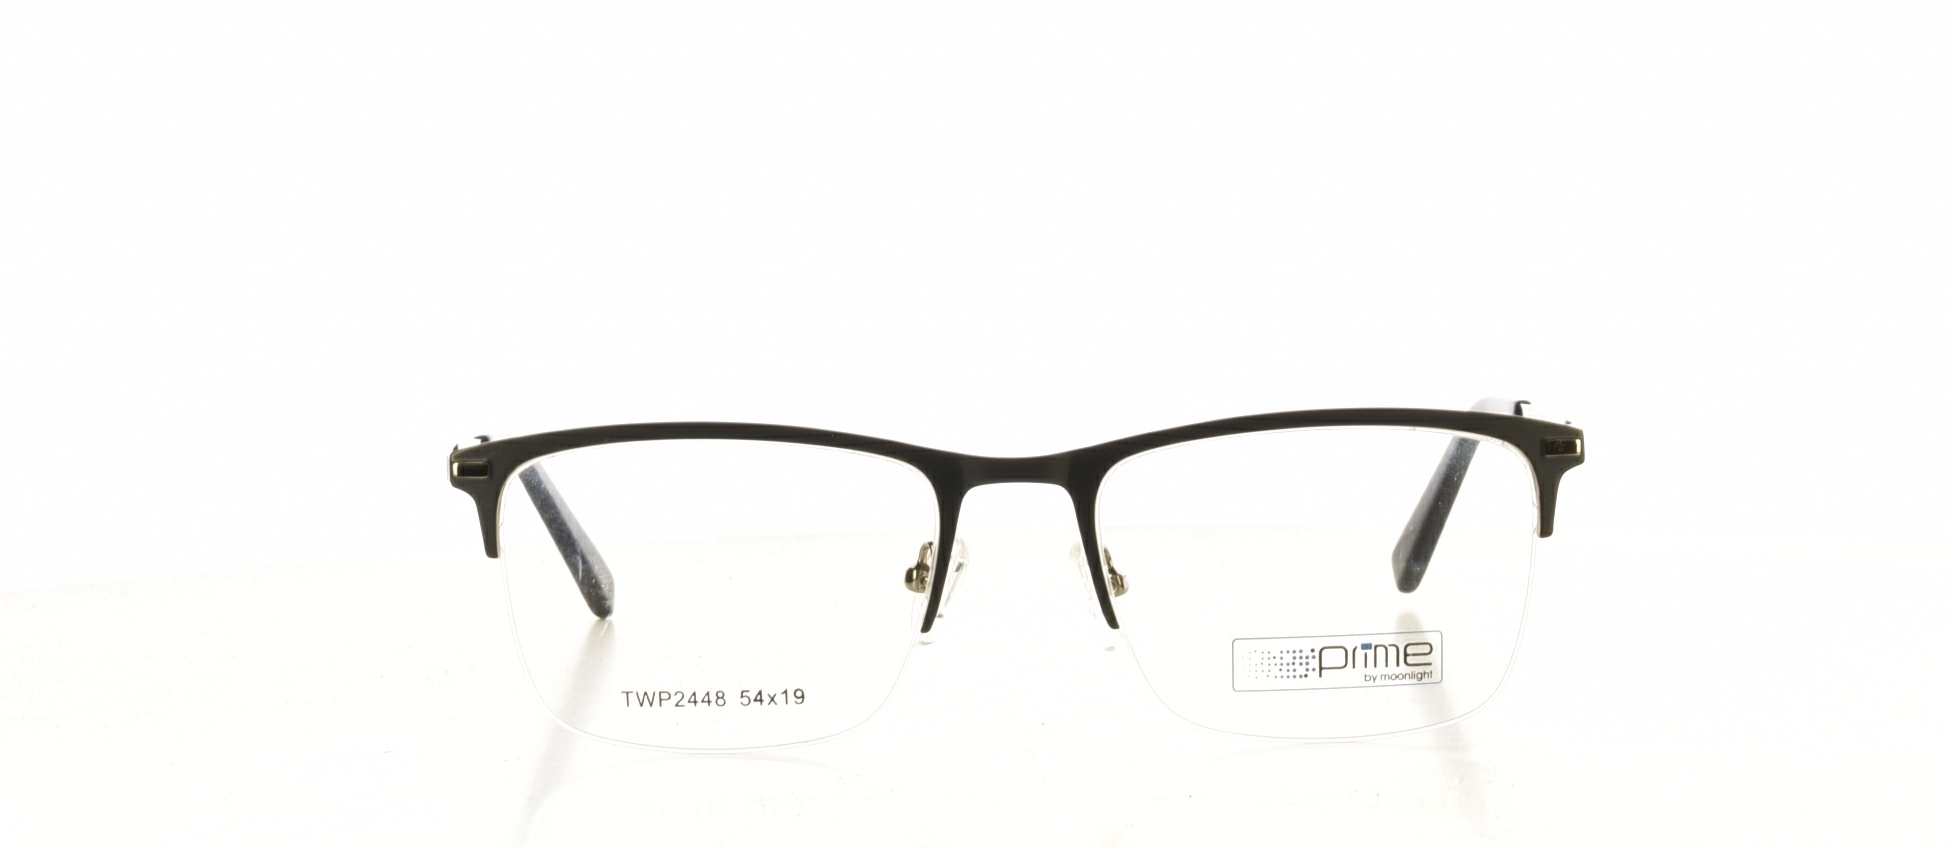 Rama ochelari vedere Prime